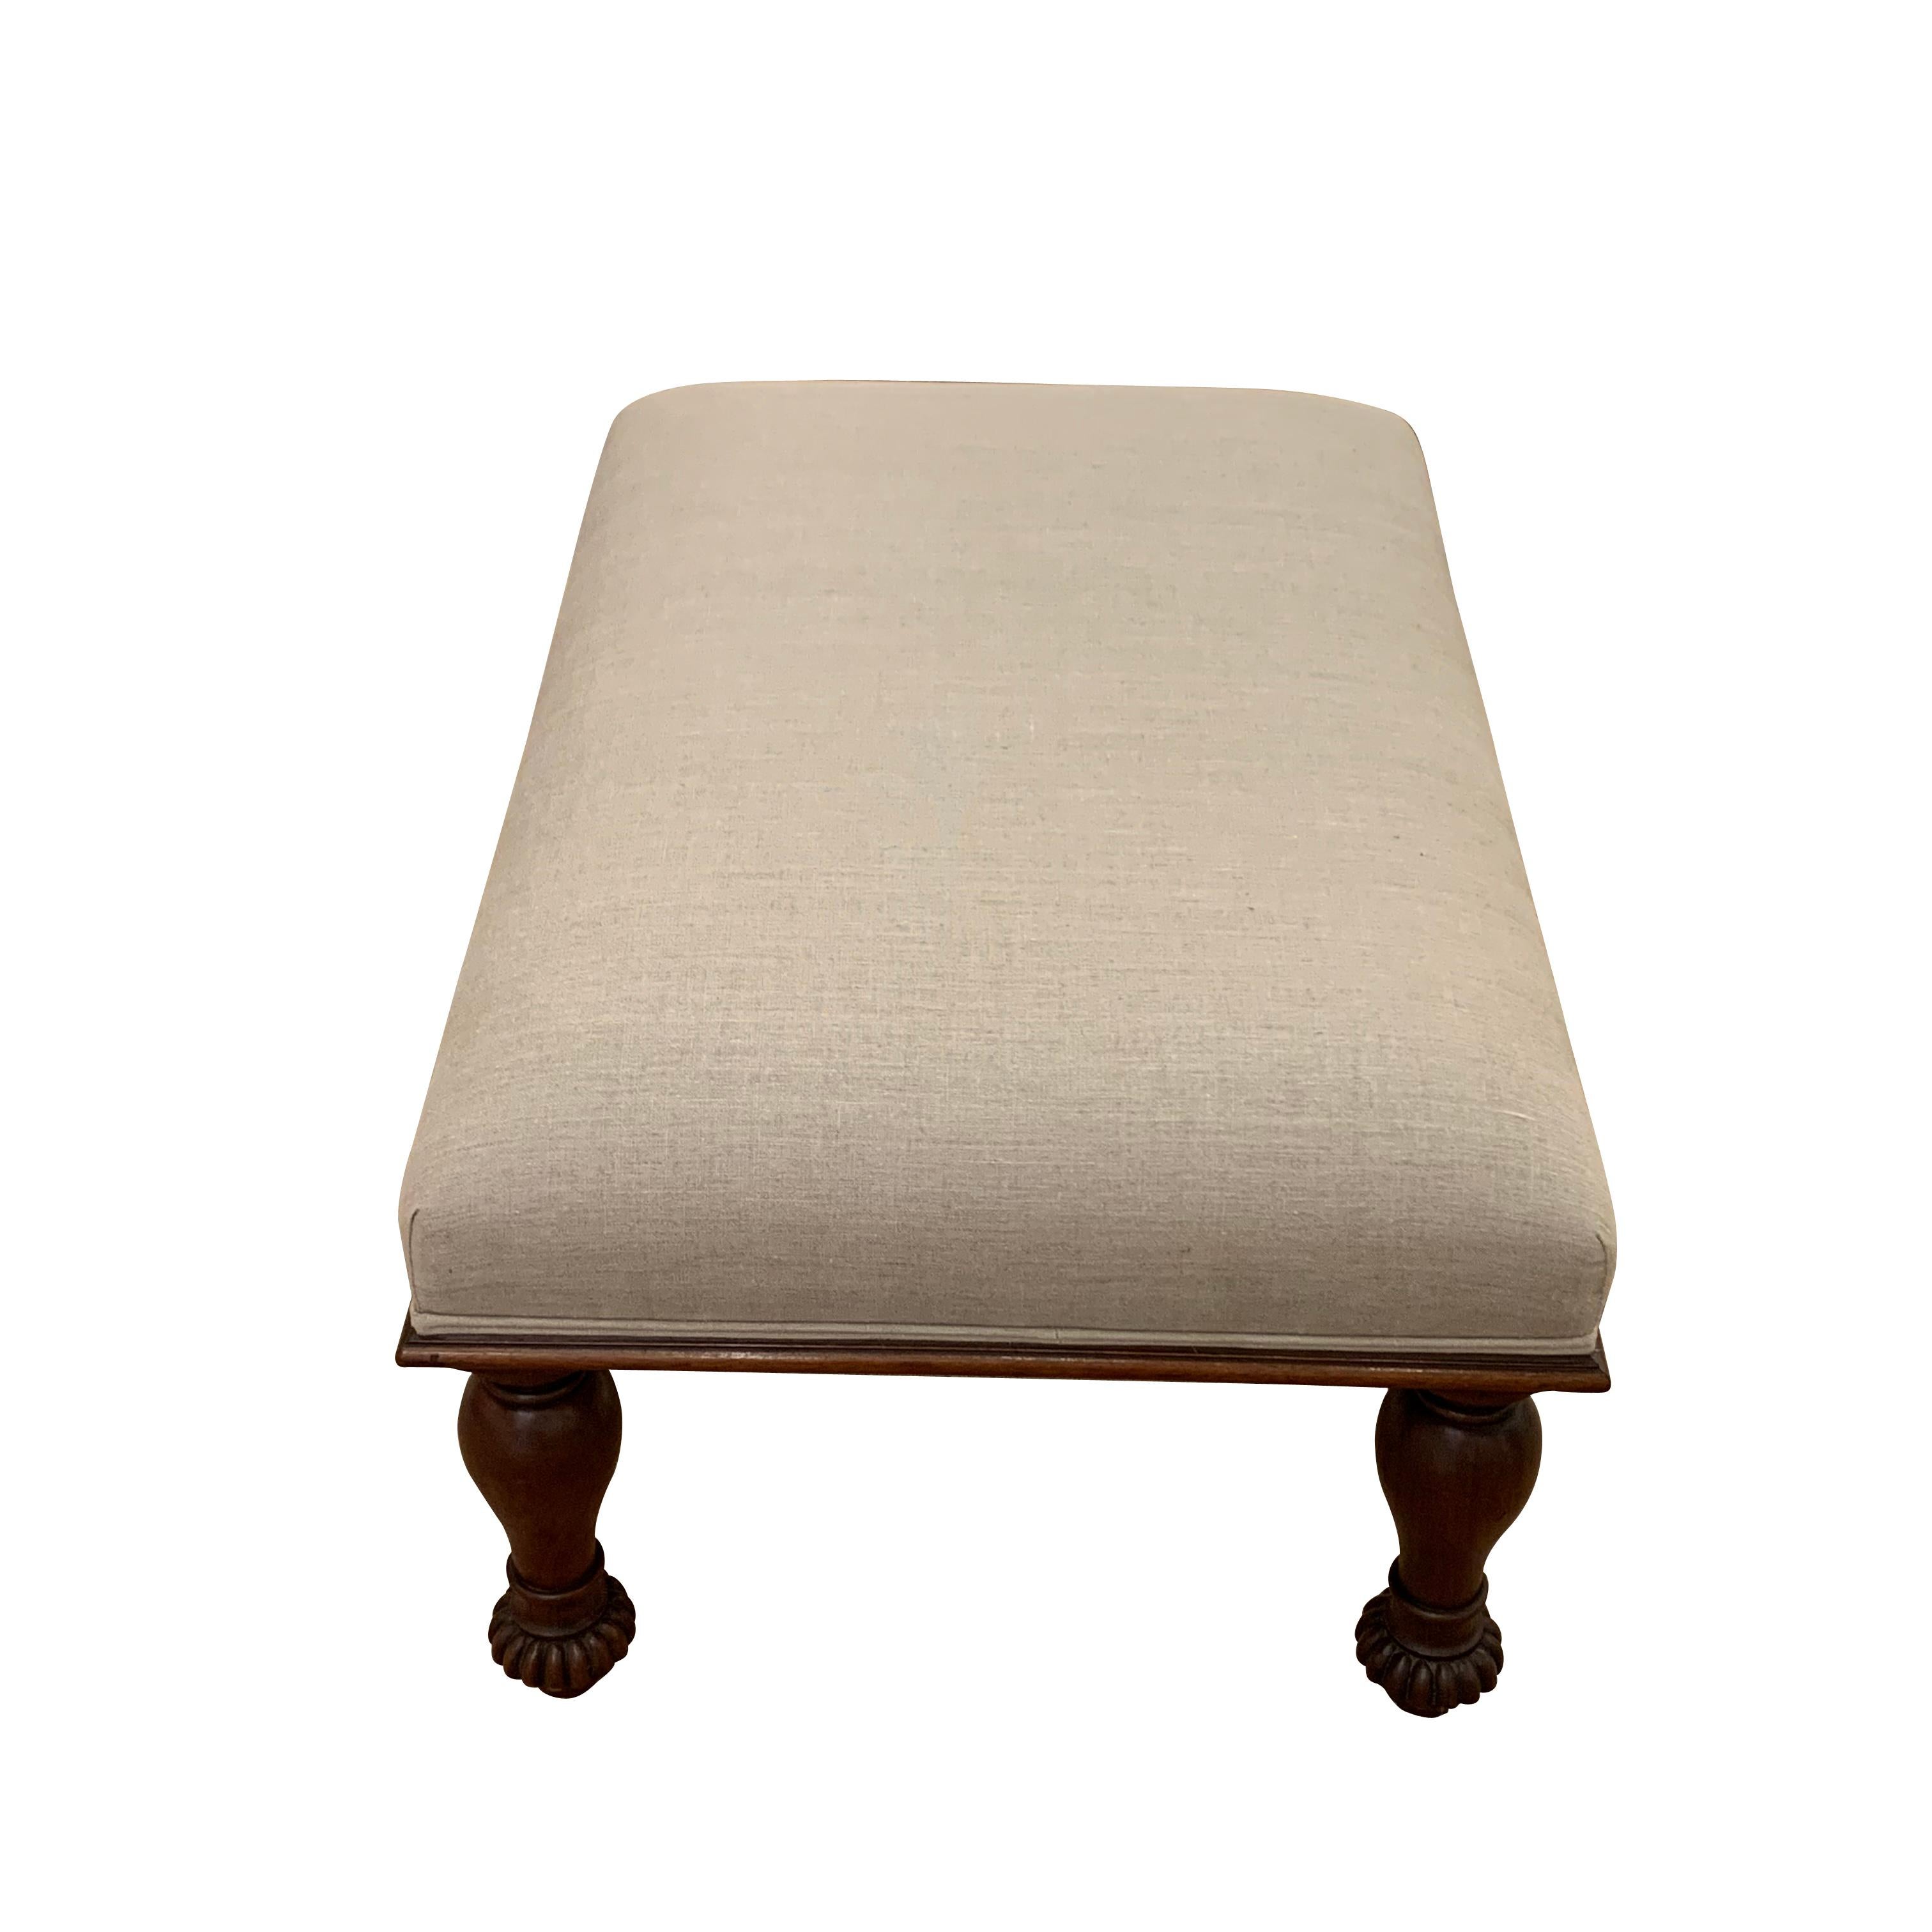 English recently reupholstered mahogany turned leg foot stool, circa 1860
